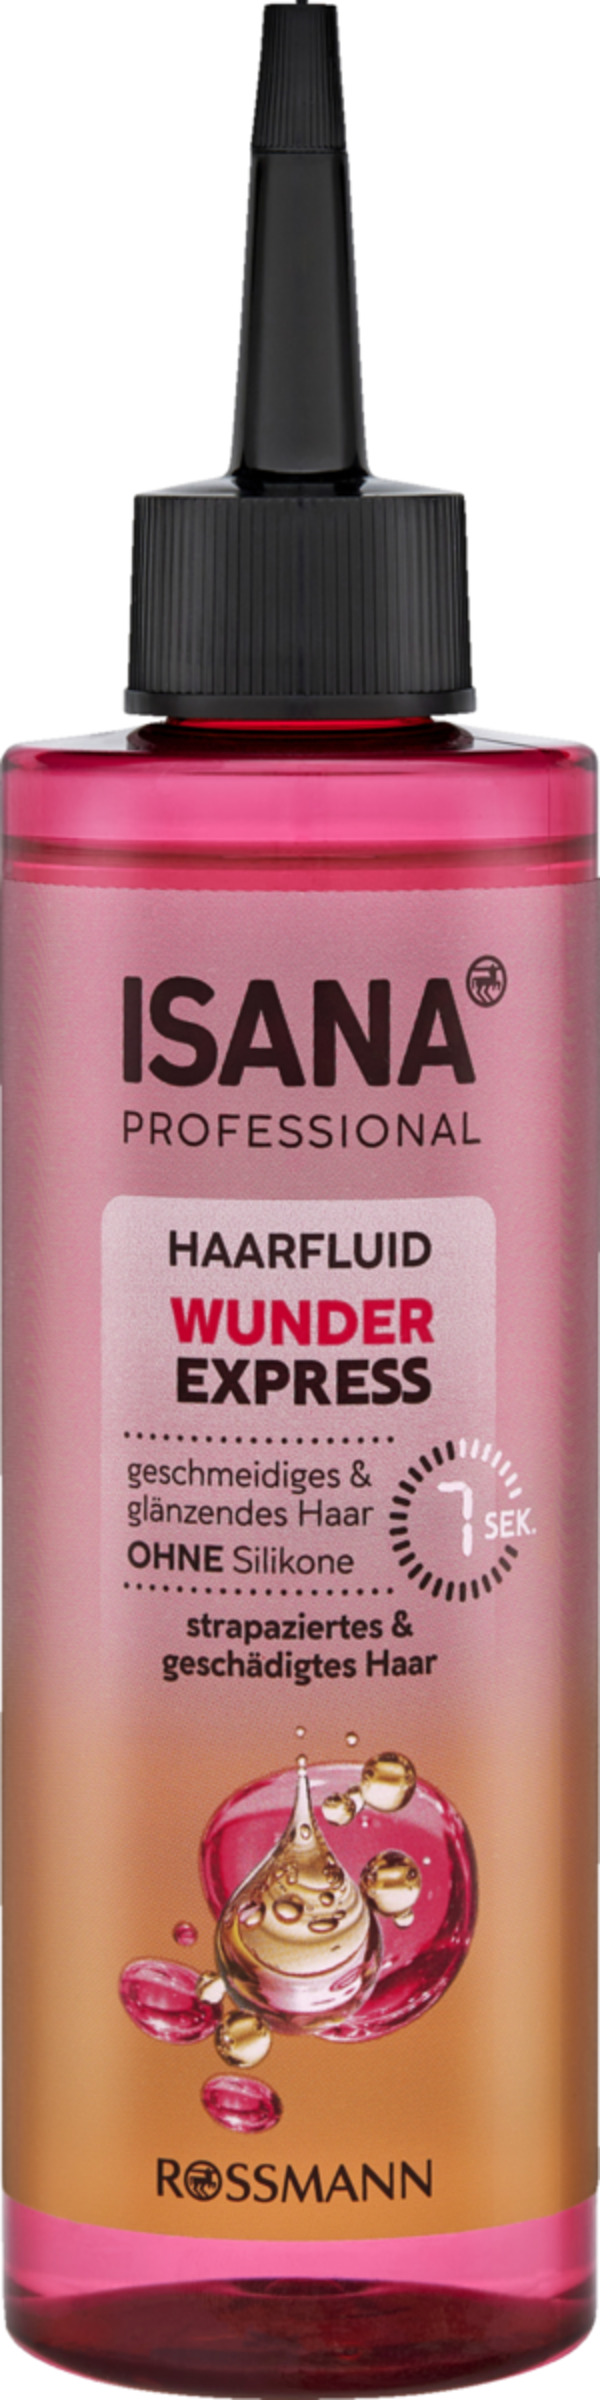 Bild 1 von ISANA PROFESSIONAL Haarfluid Wunder Express